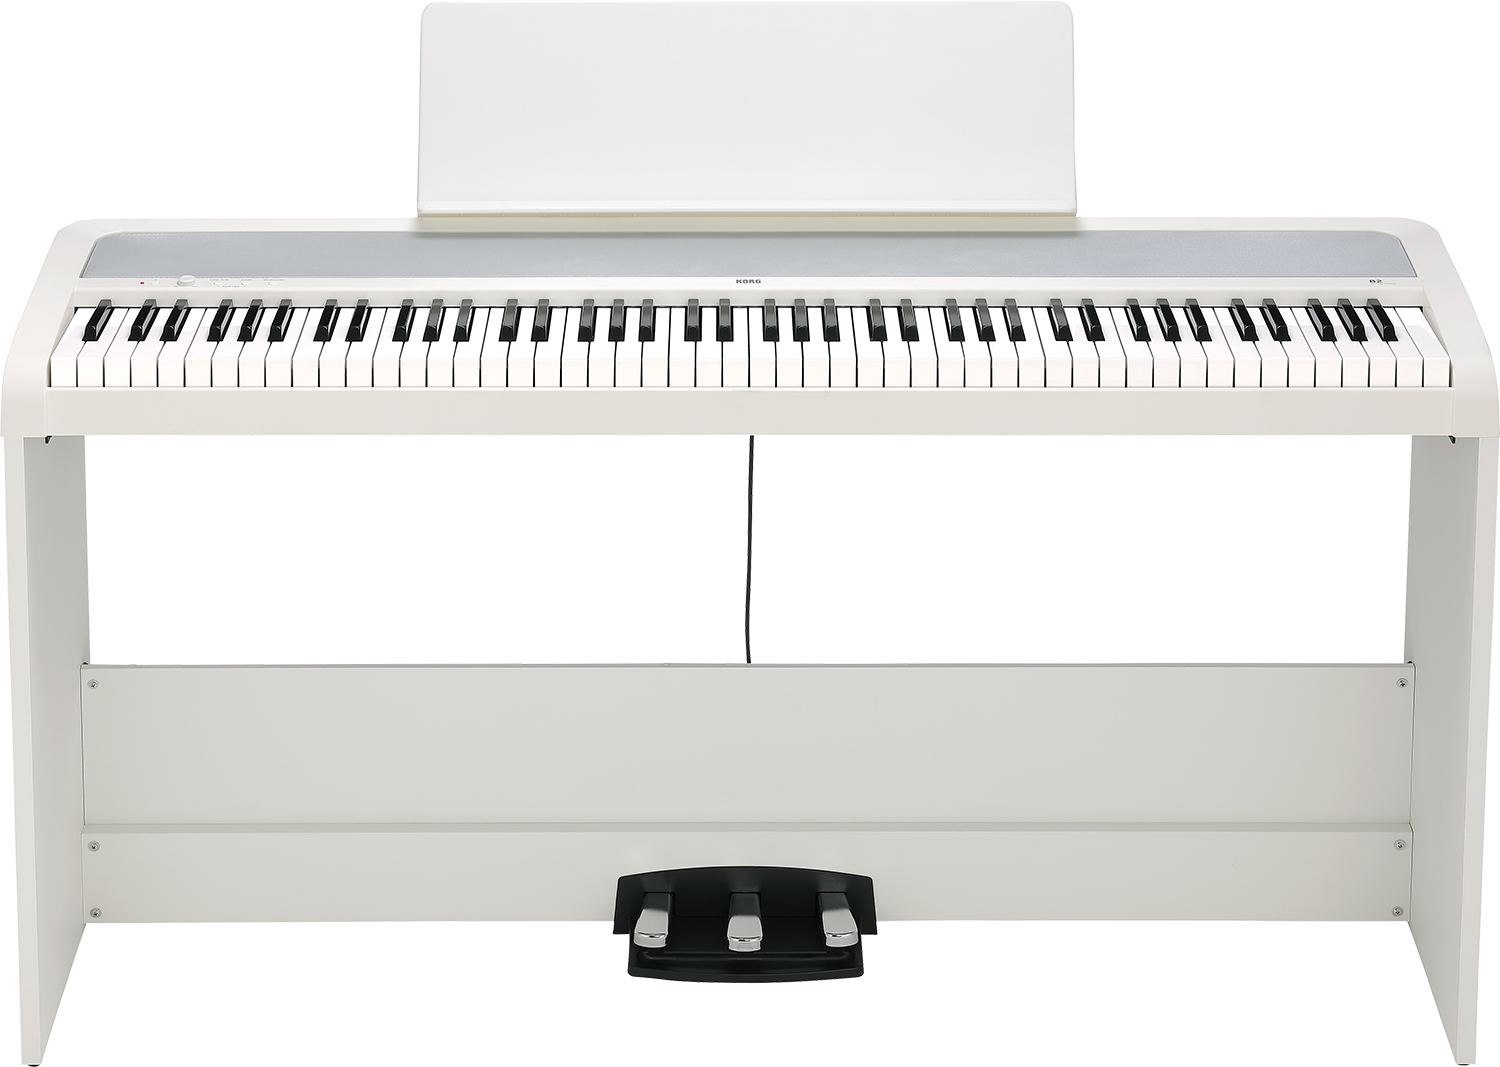 1: KORG B2SP Digital klaver komplet med ben og pedaler - Hvid